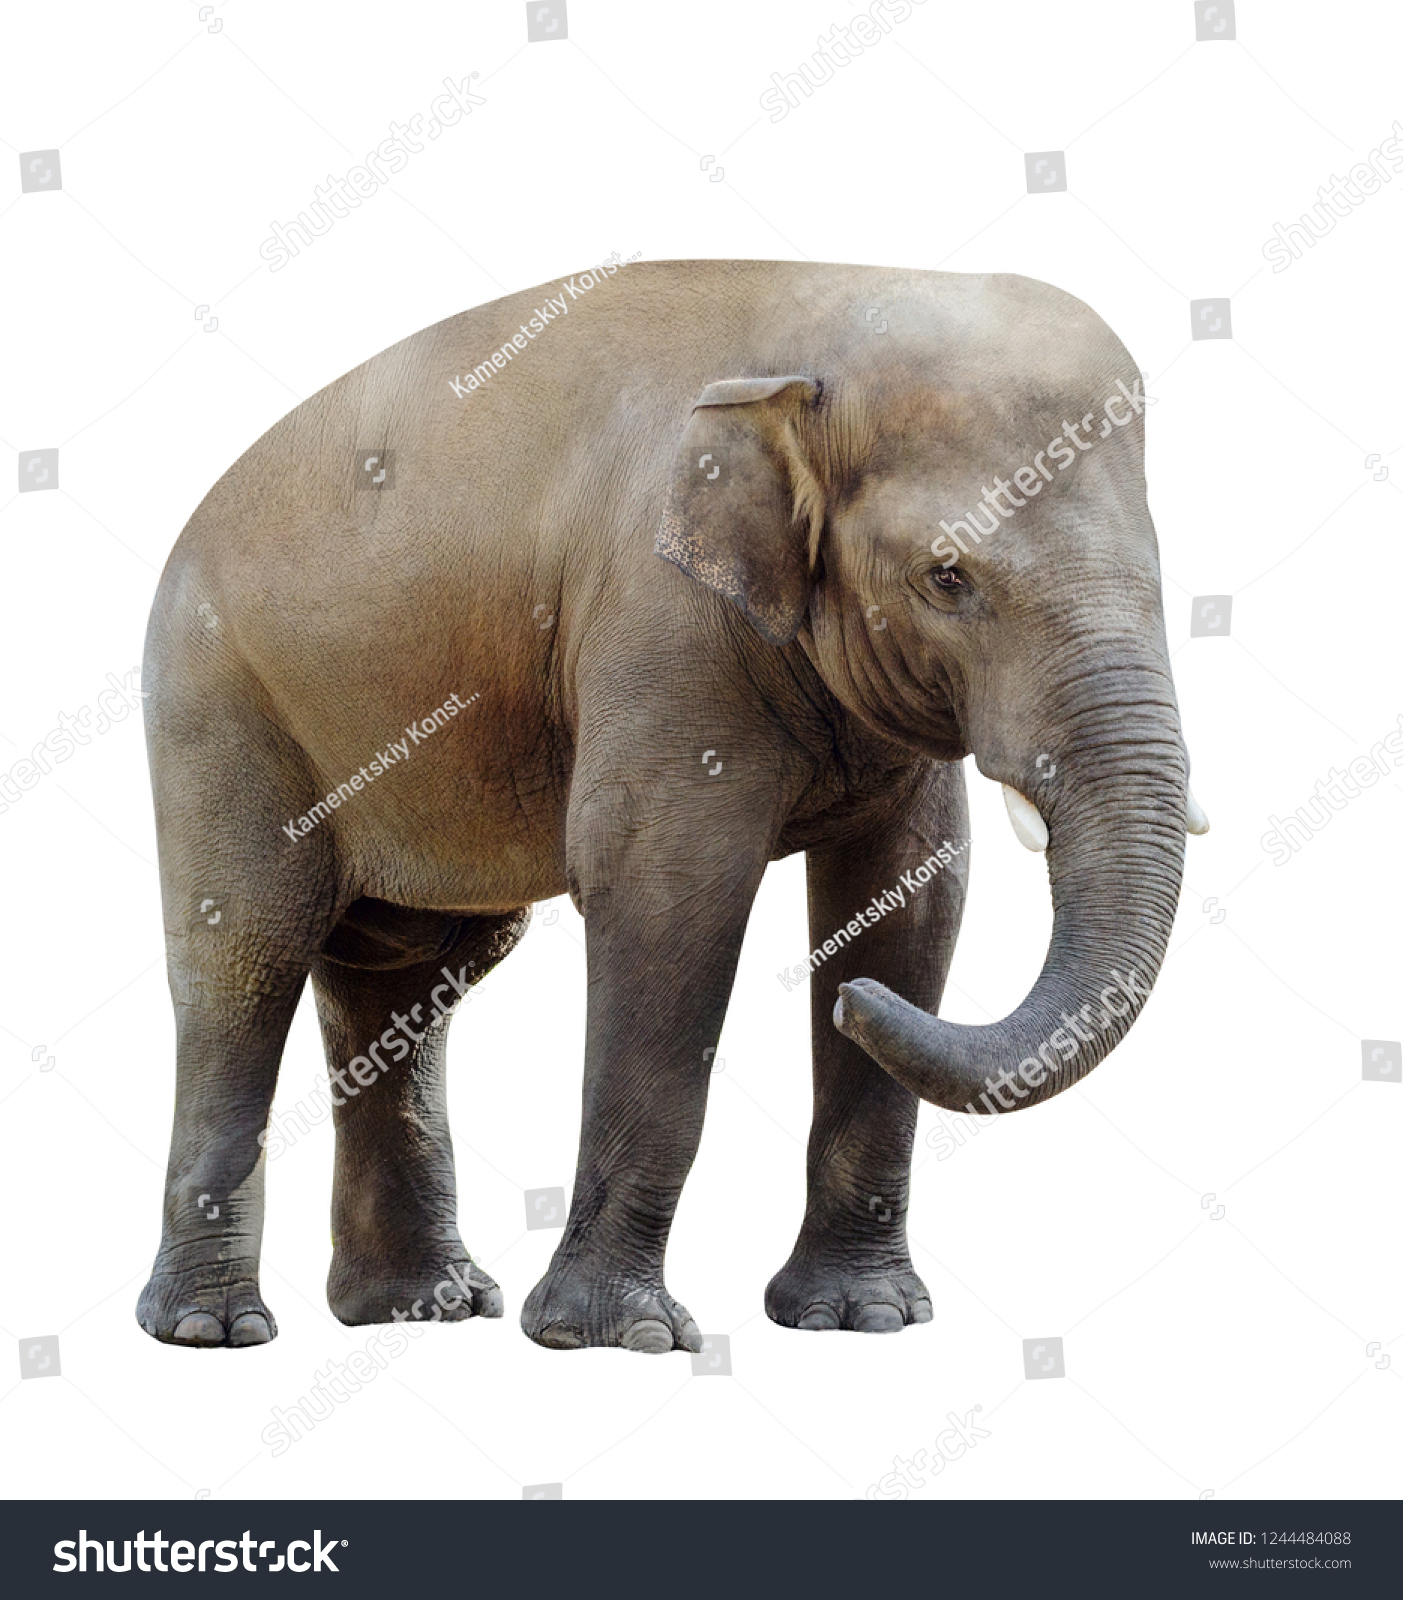 「アフリカゾウの妊娠デジタルイラスト」のイラスト素材 759826171 | Shutterstock